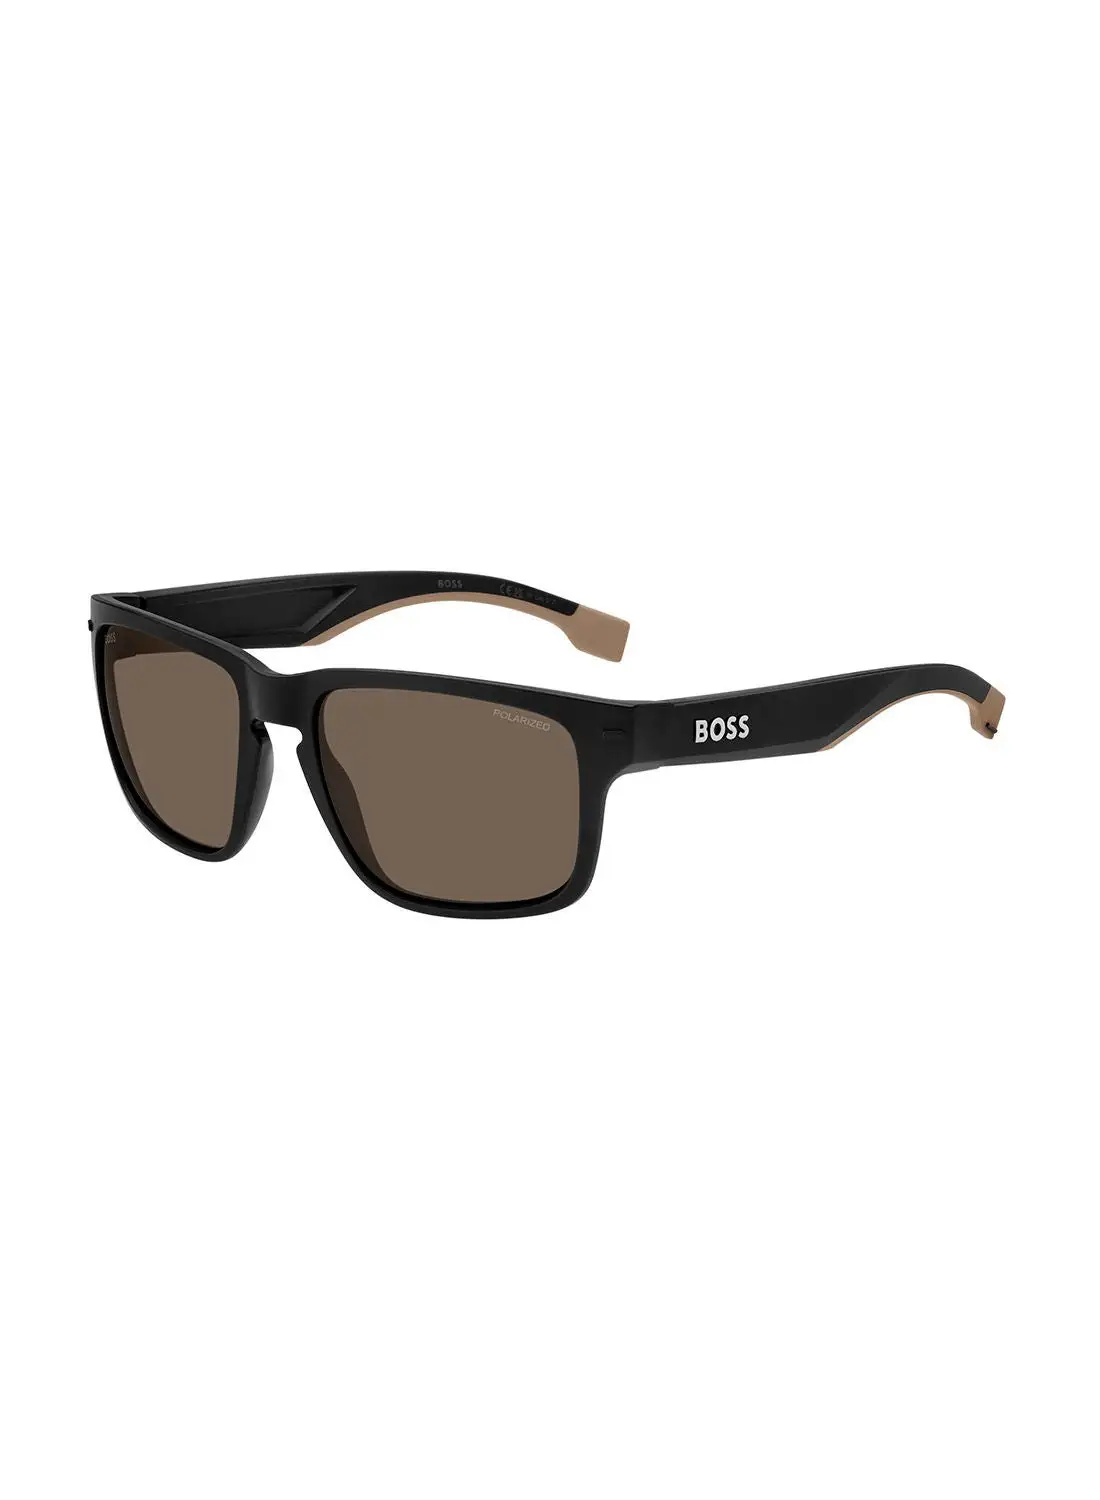 HUGO BOSS Men's UV Protection Rectangular Sunglasses - Boss 1497/S Mt Blk Bg 57 - Lens Size: 57 Mm